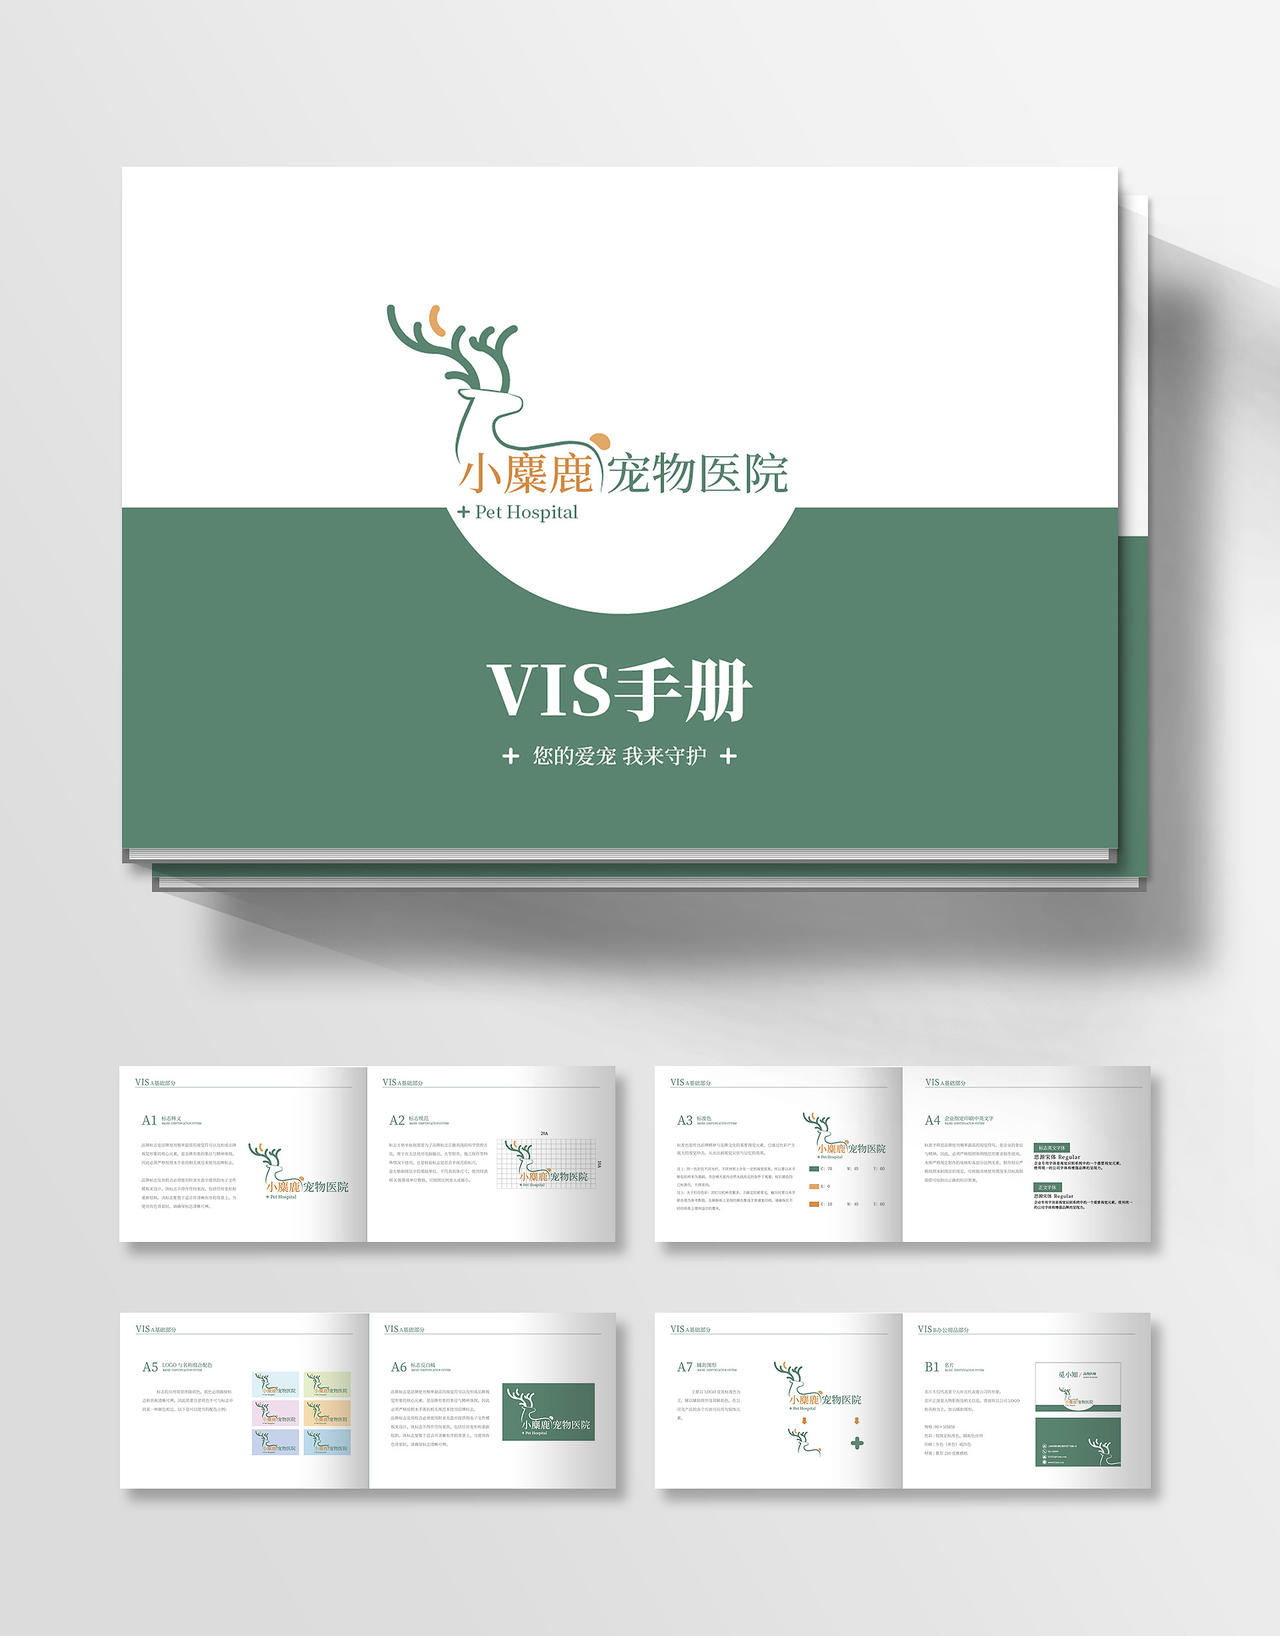 绿色矢量卡通宠物医院VIS视觉识别系统VI手册vi手册